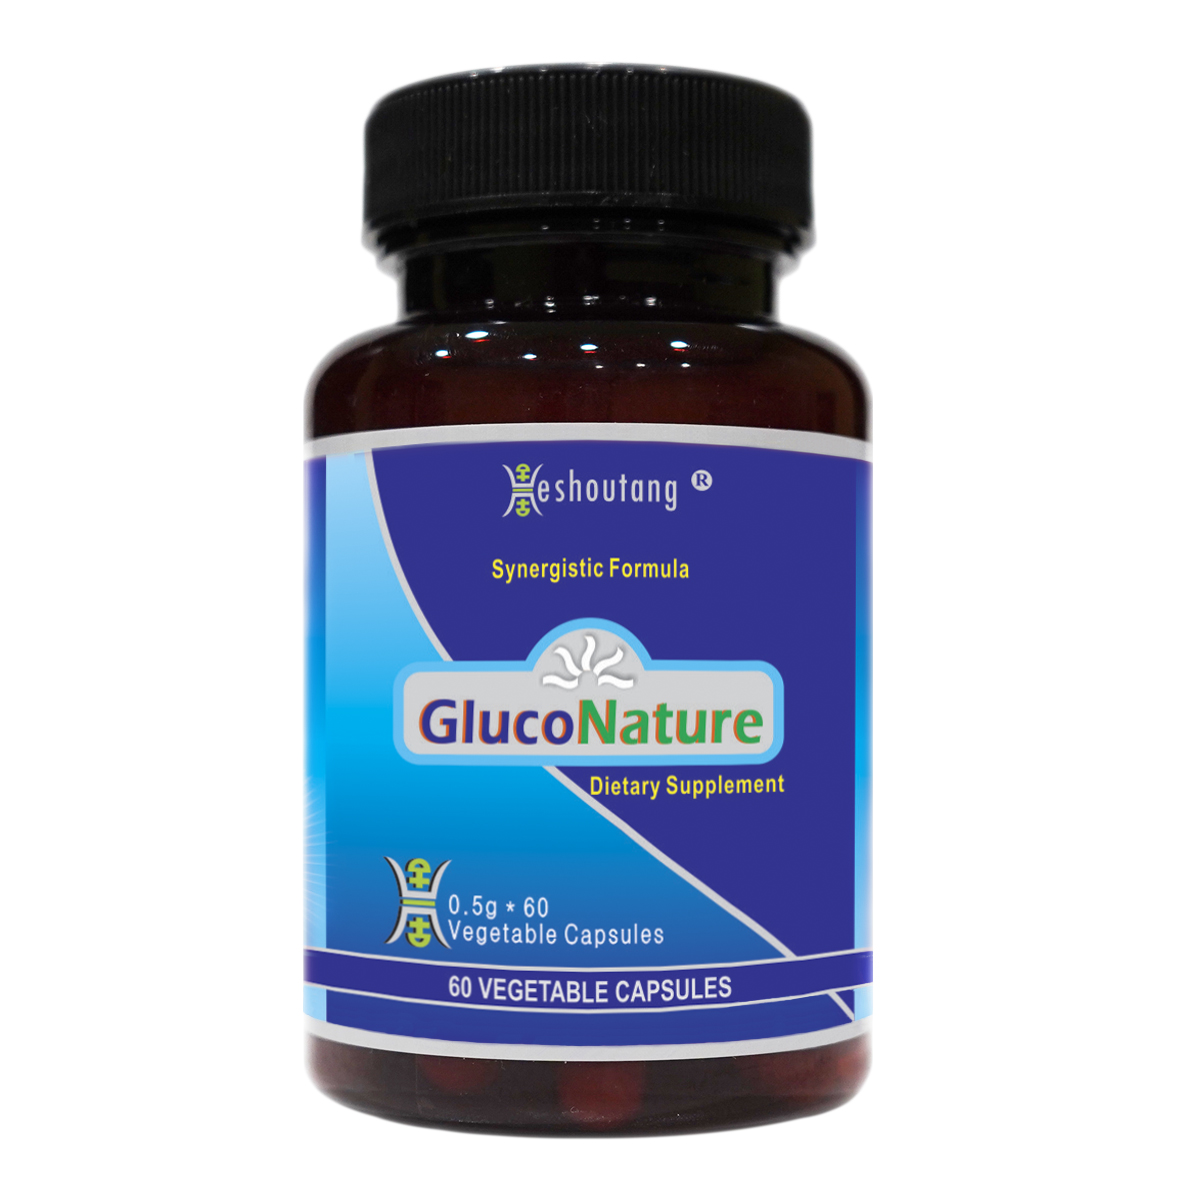 GlucoNature